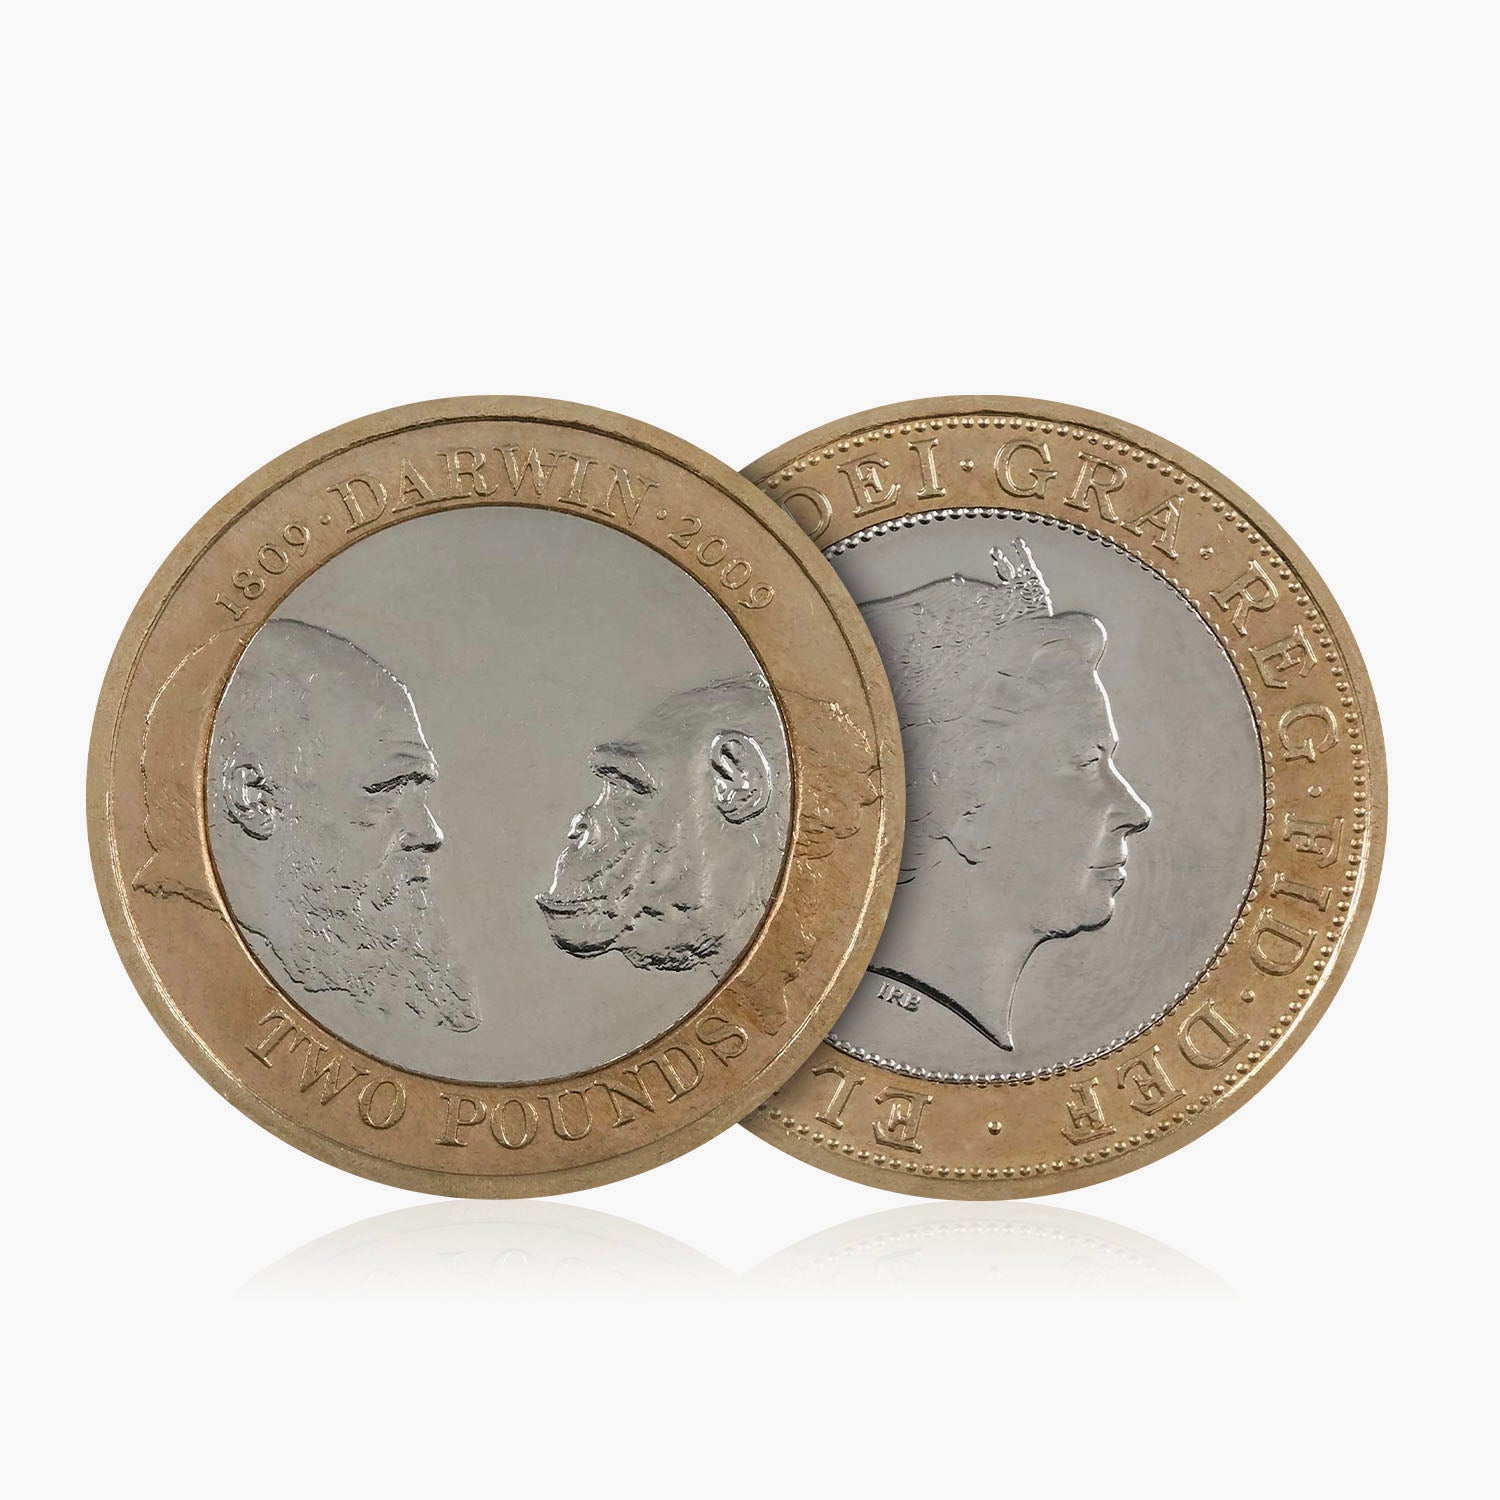 2009 Circulated Charles Darwin UK £2 Coin